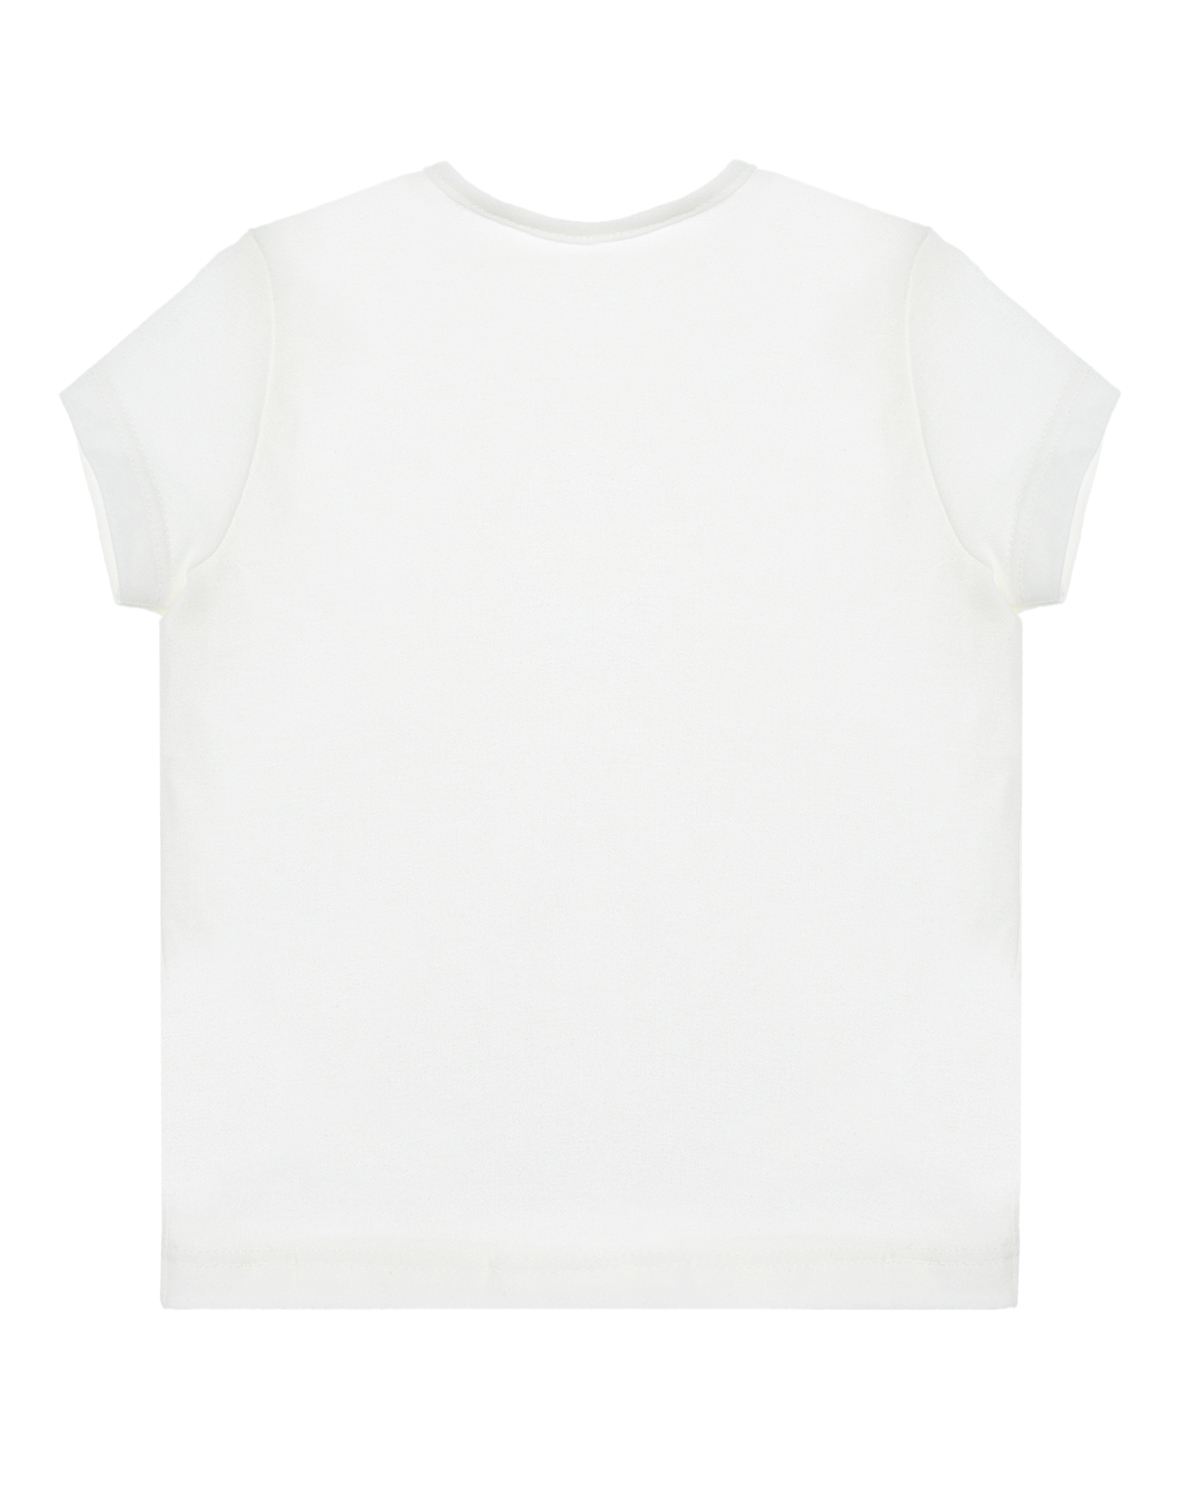 Белая футболка с вышивкой "птичка" Sanetta fiftyseven детская, размер 62, цвет белый - фото 2